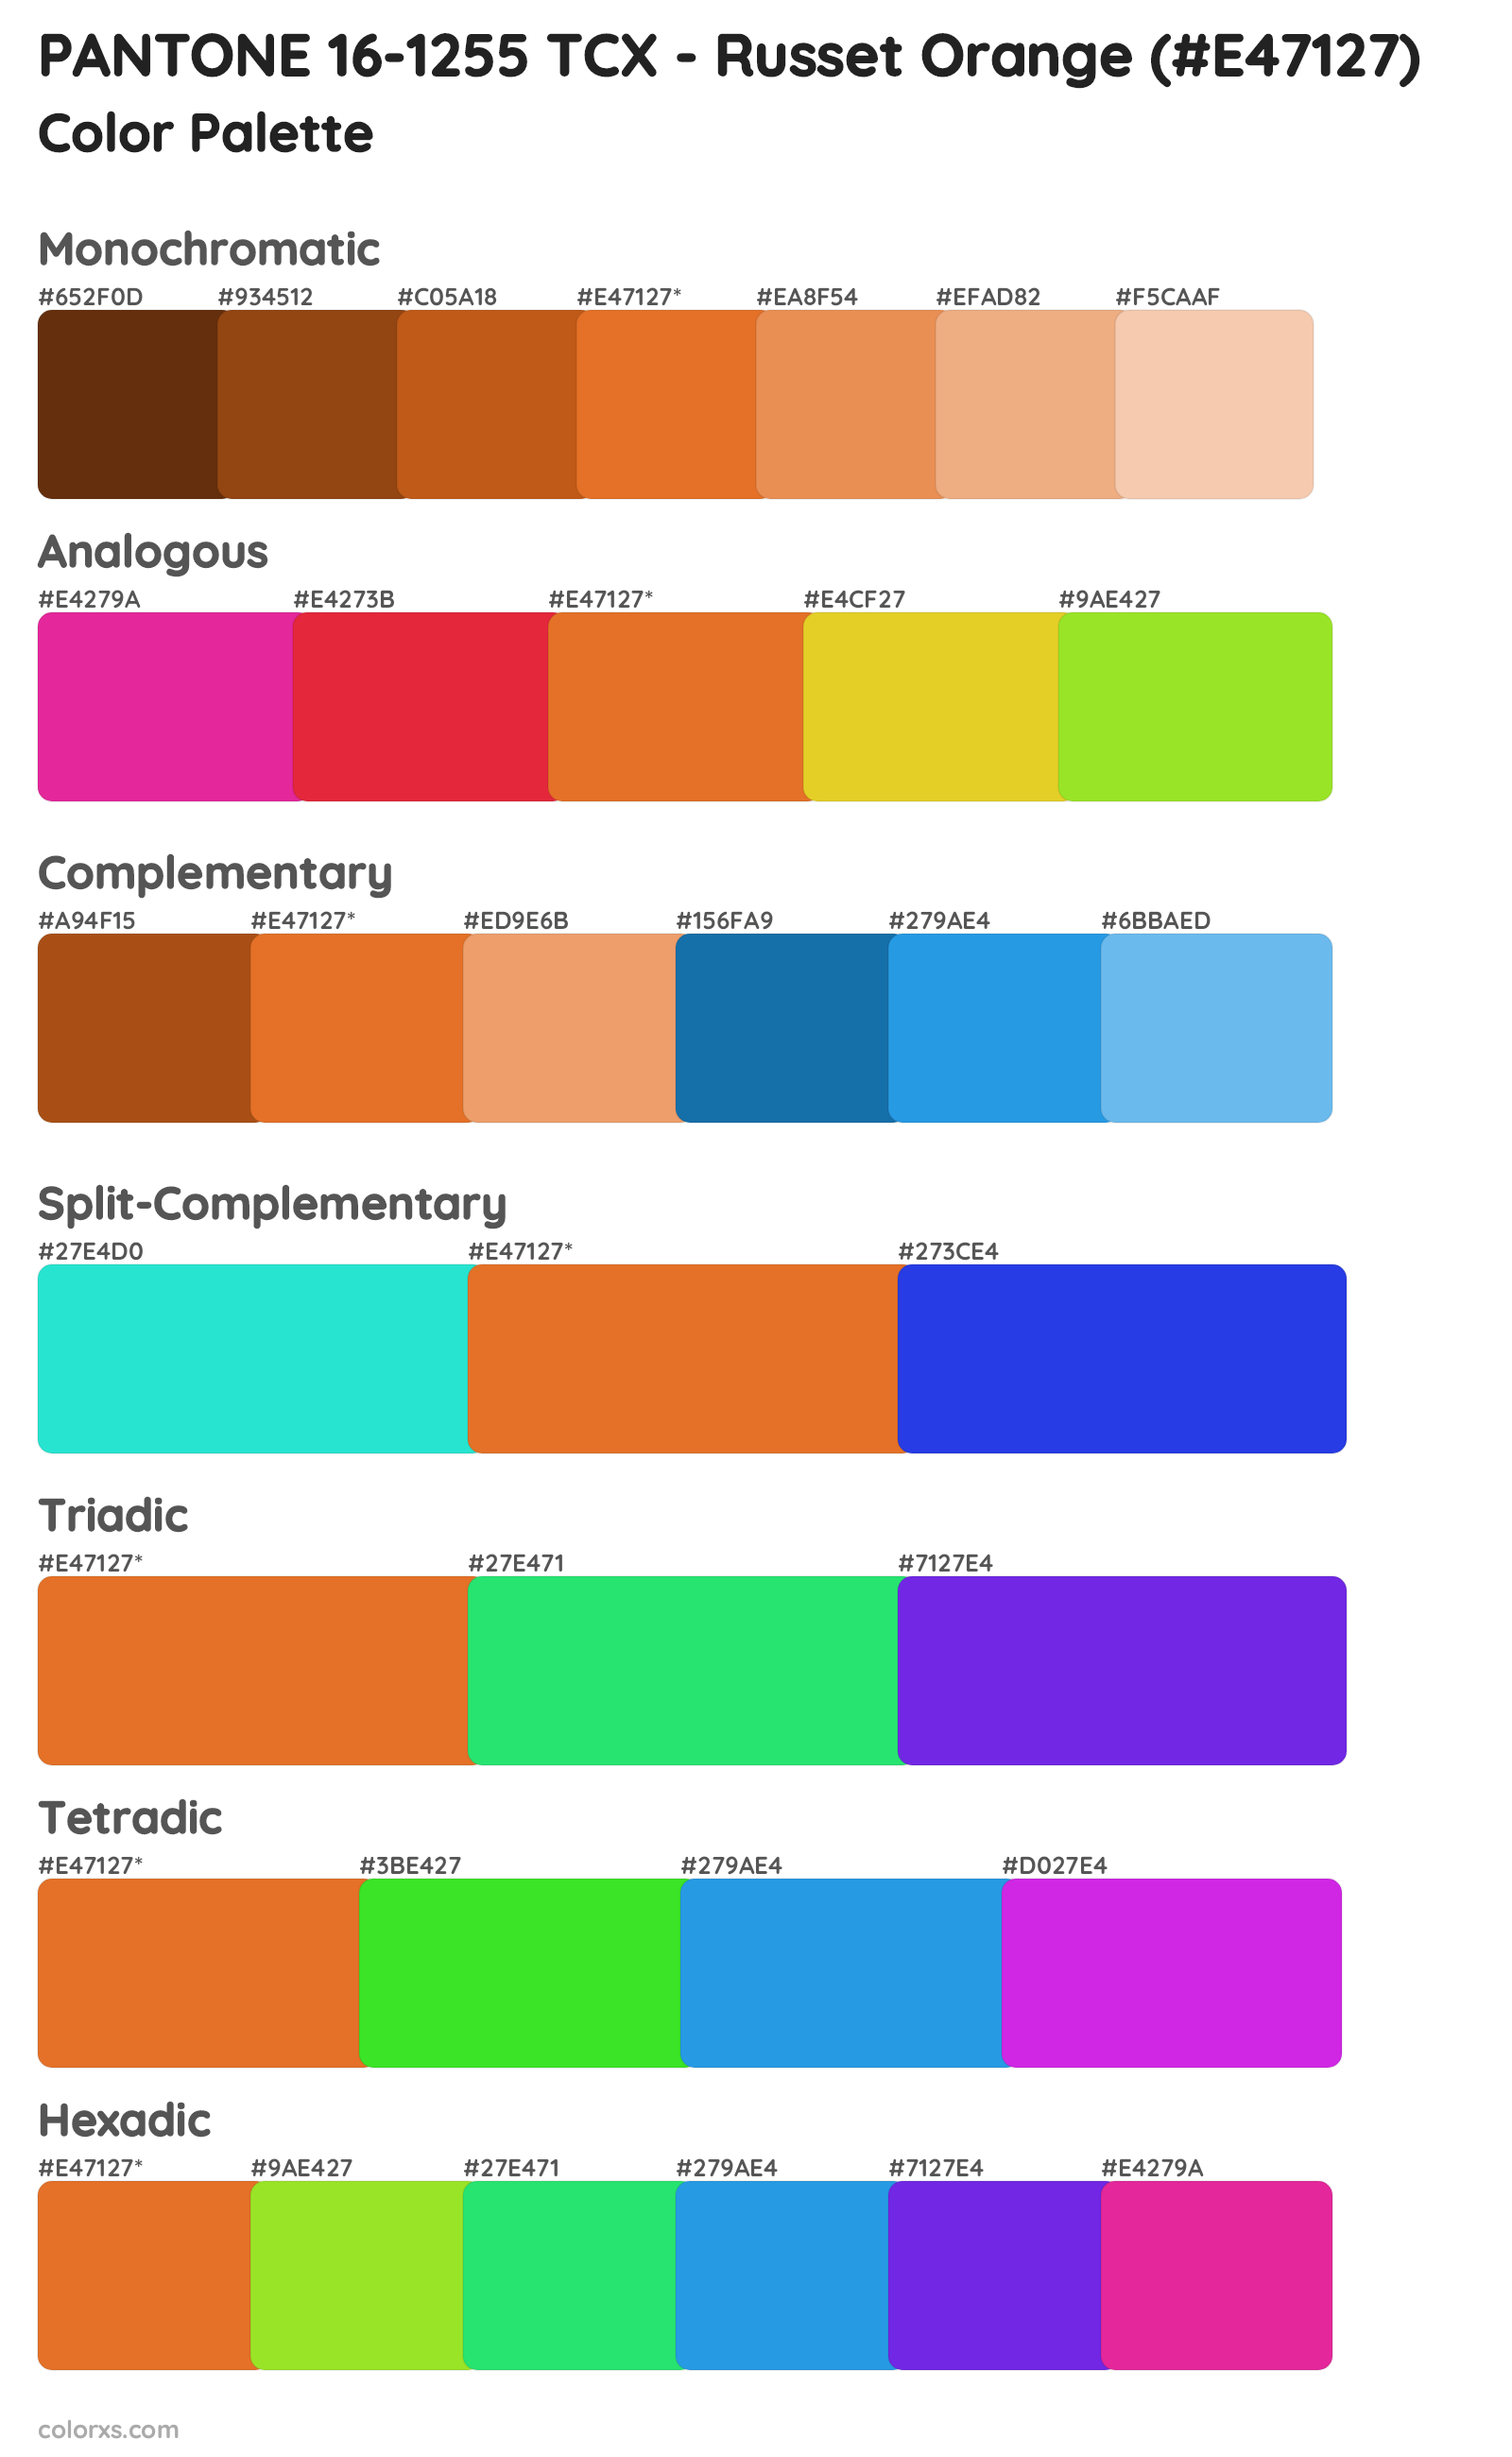 PANTONE 16-1255 TCX - Russet Orange Color Scheme Palettes